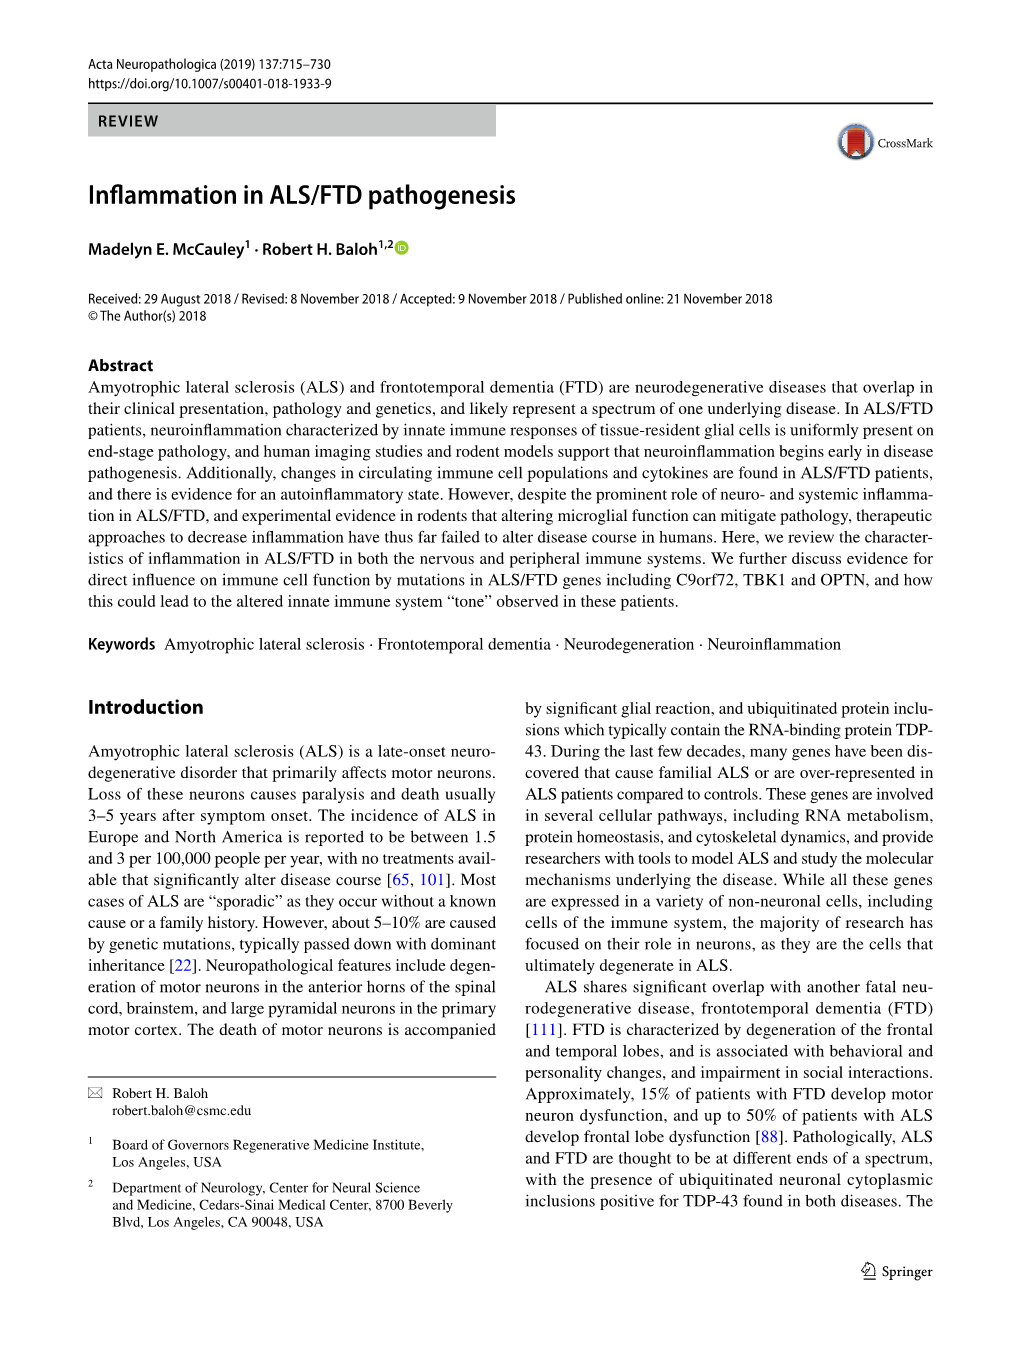 Inflammation in ALS/FTD Pathogenesis